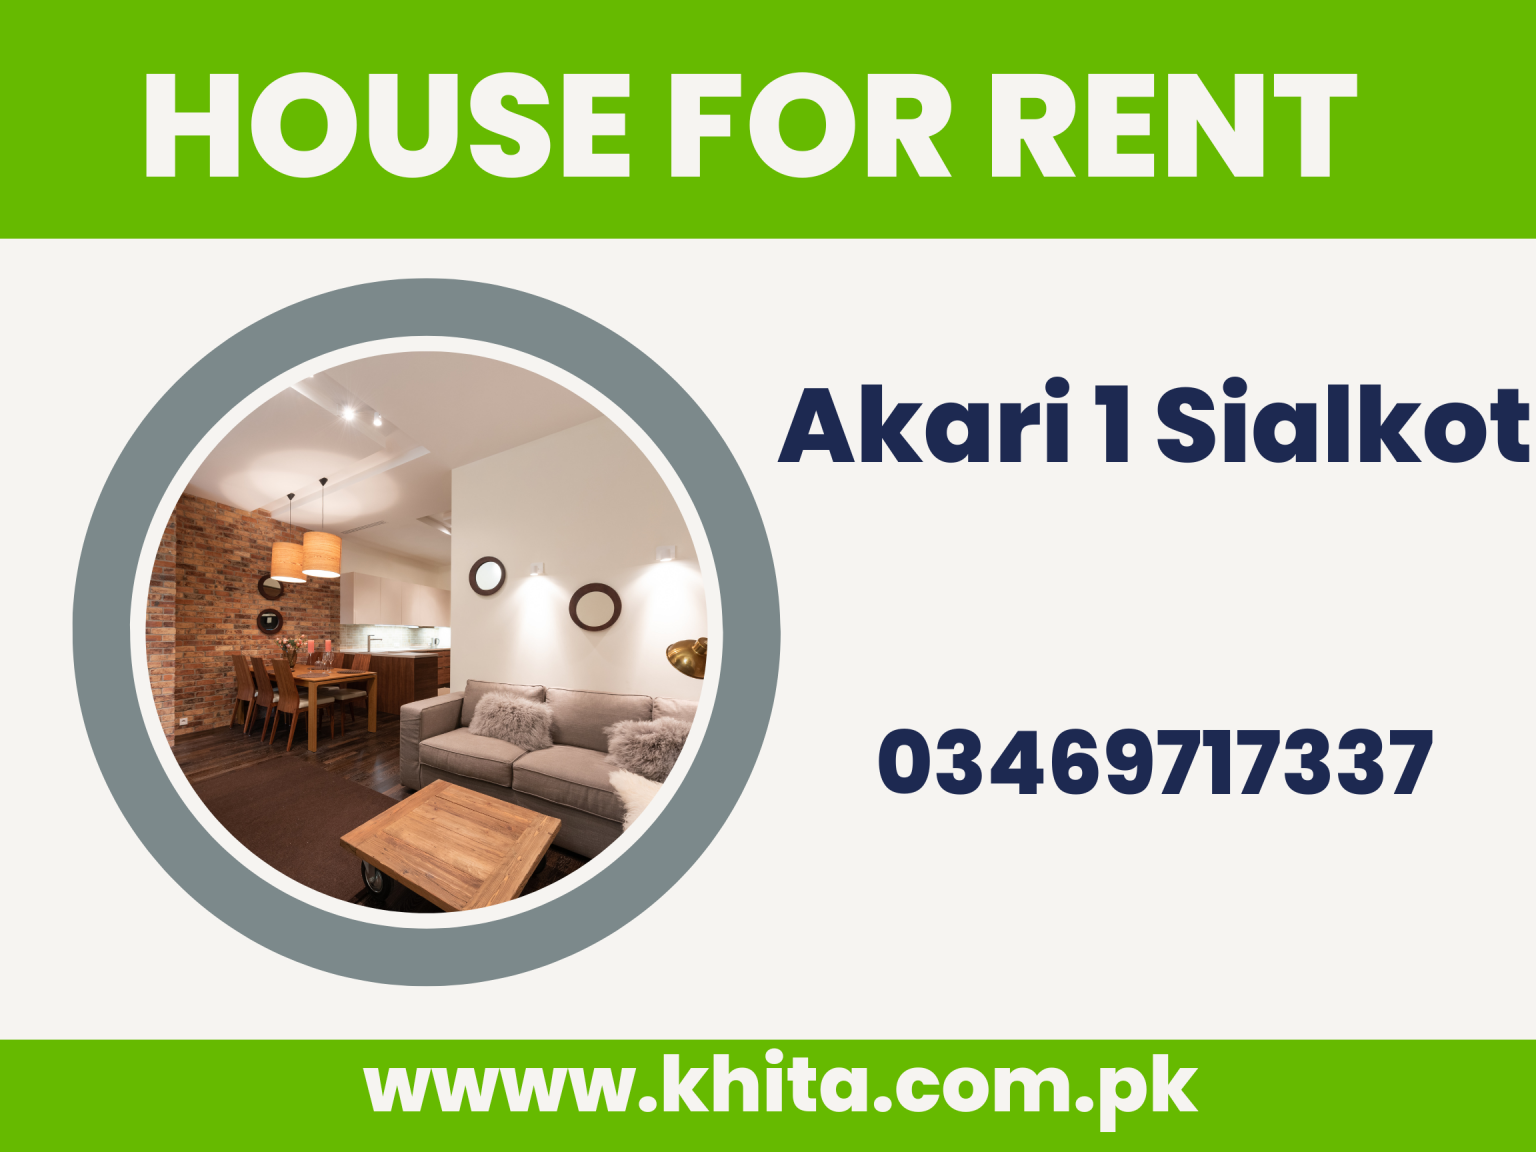 House for Rent in Askari 1 Sialkot